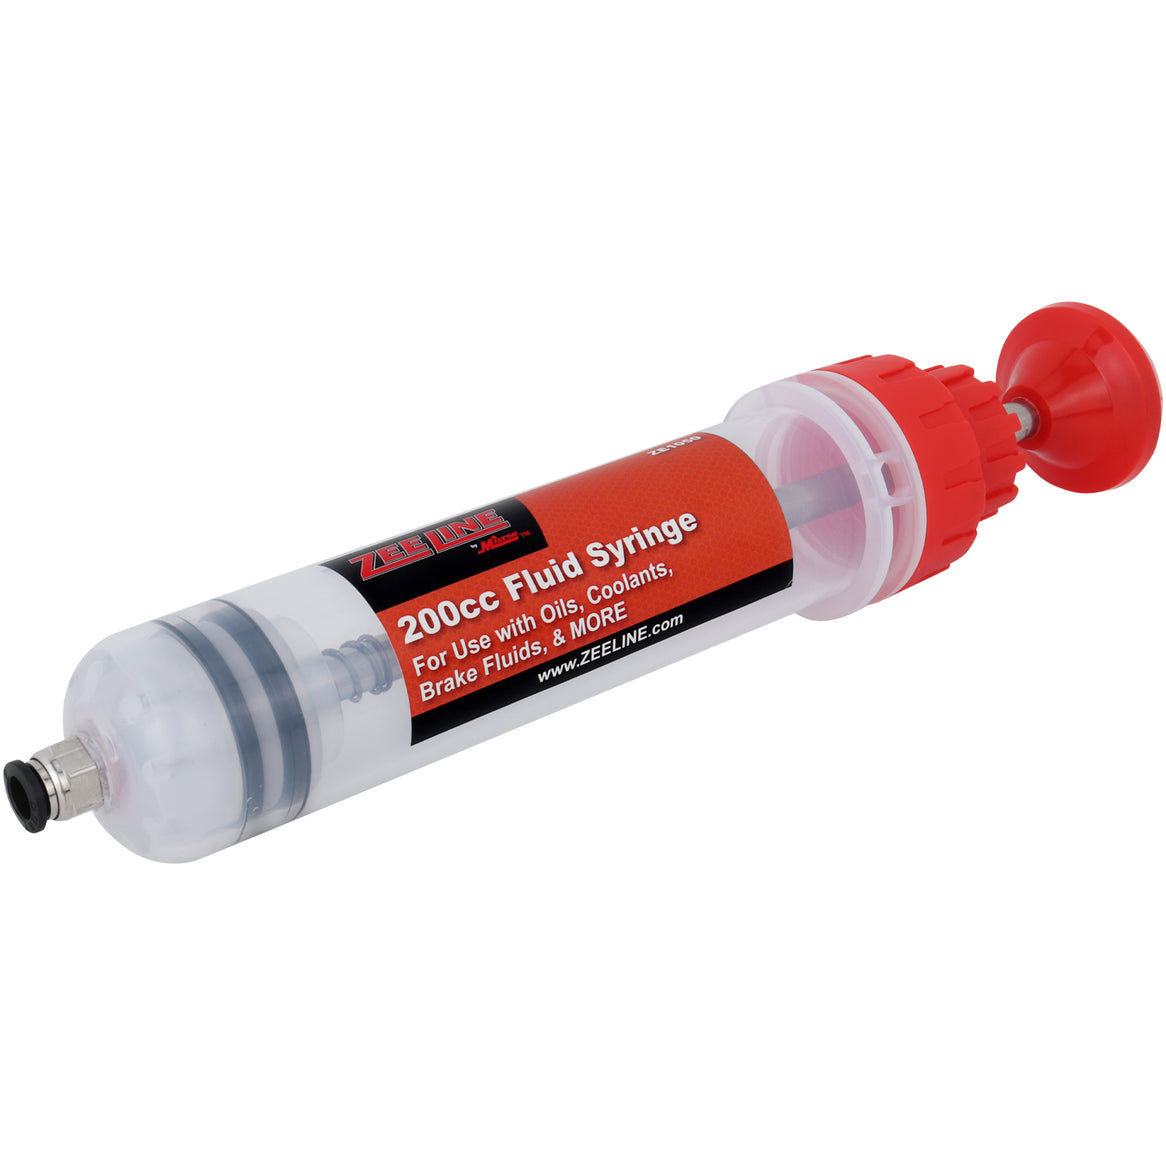 ZE1050 - 200cc Fluid Syringe